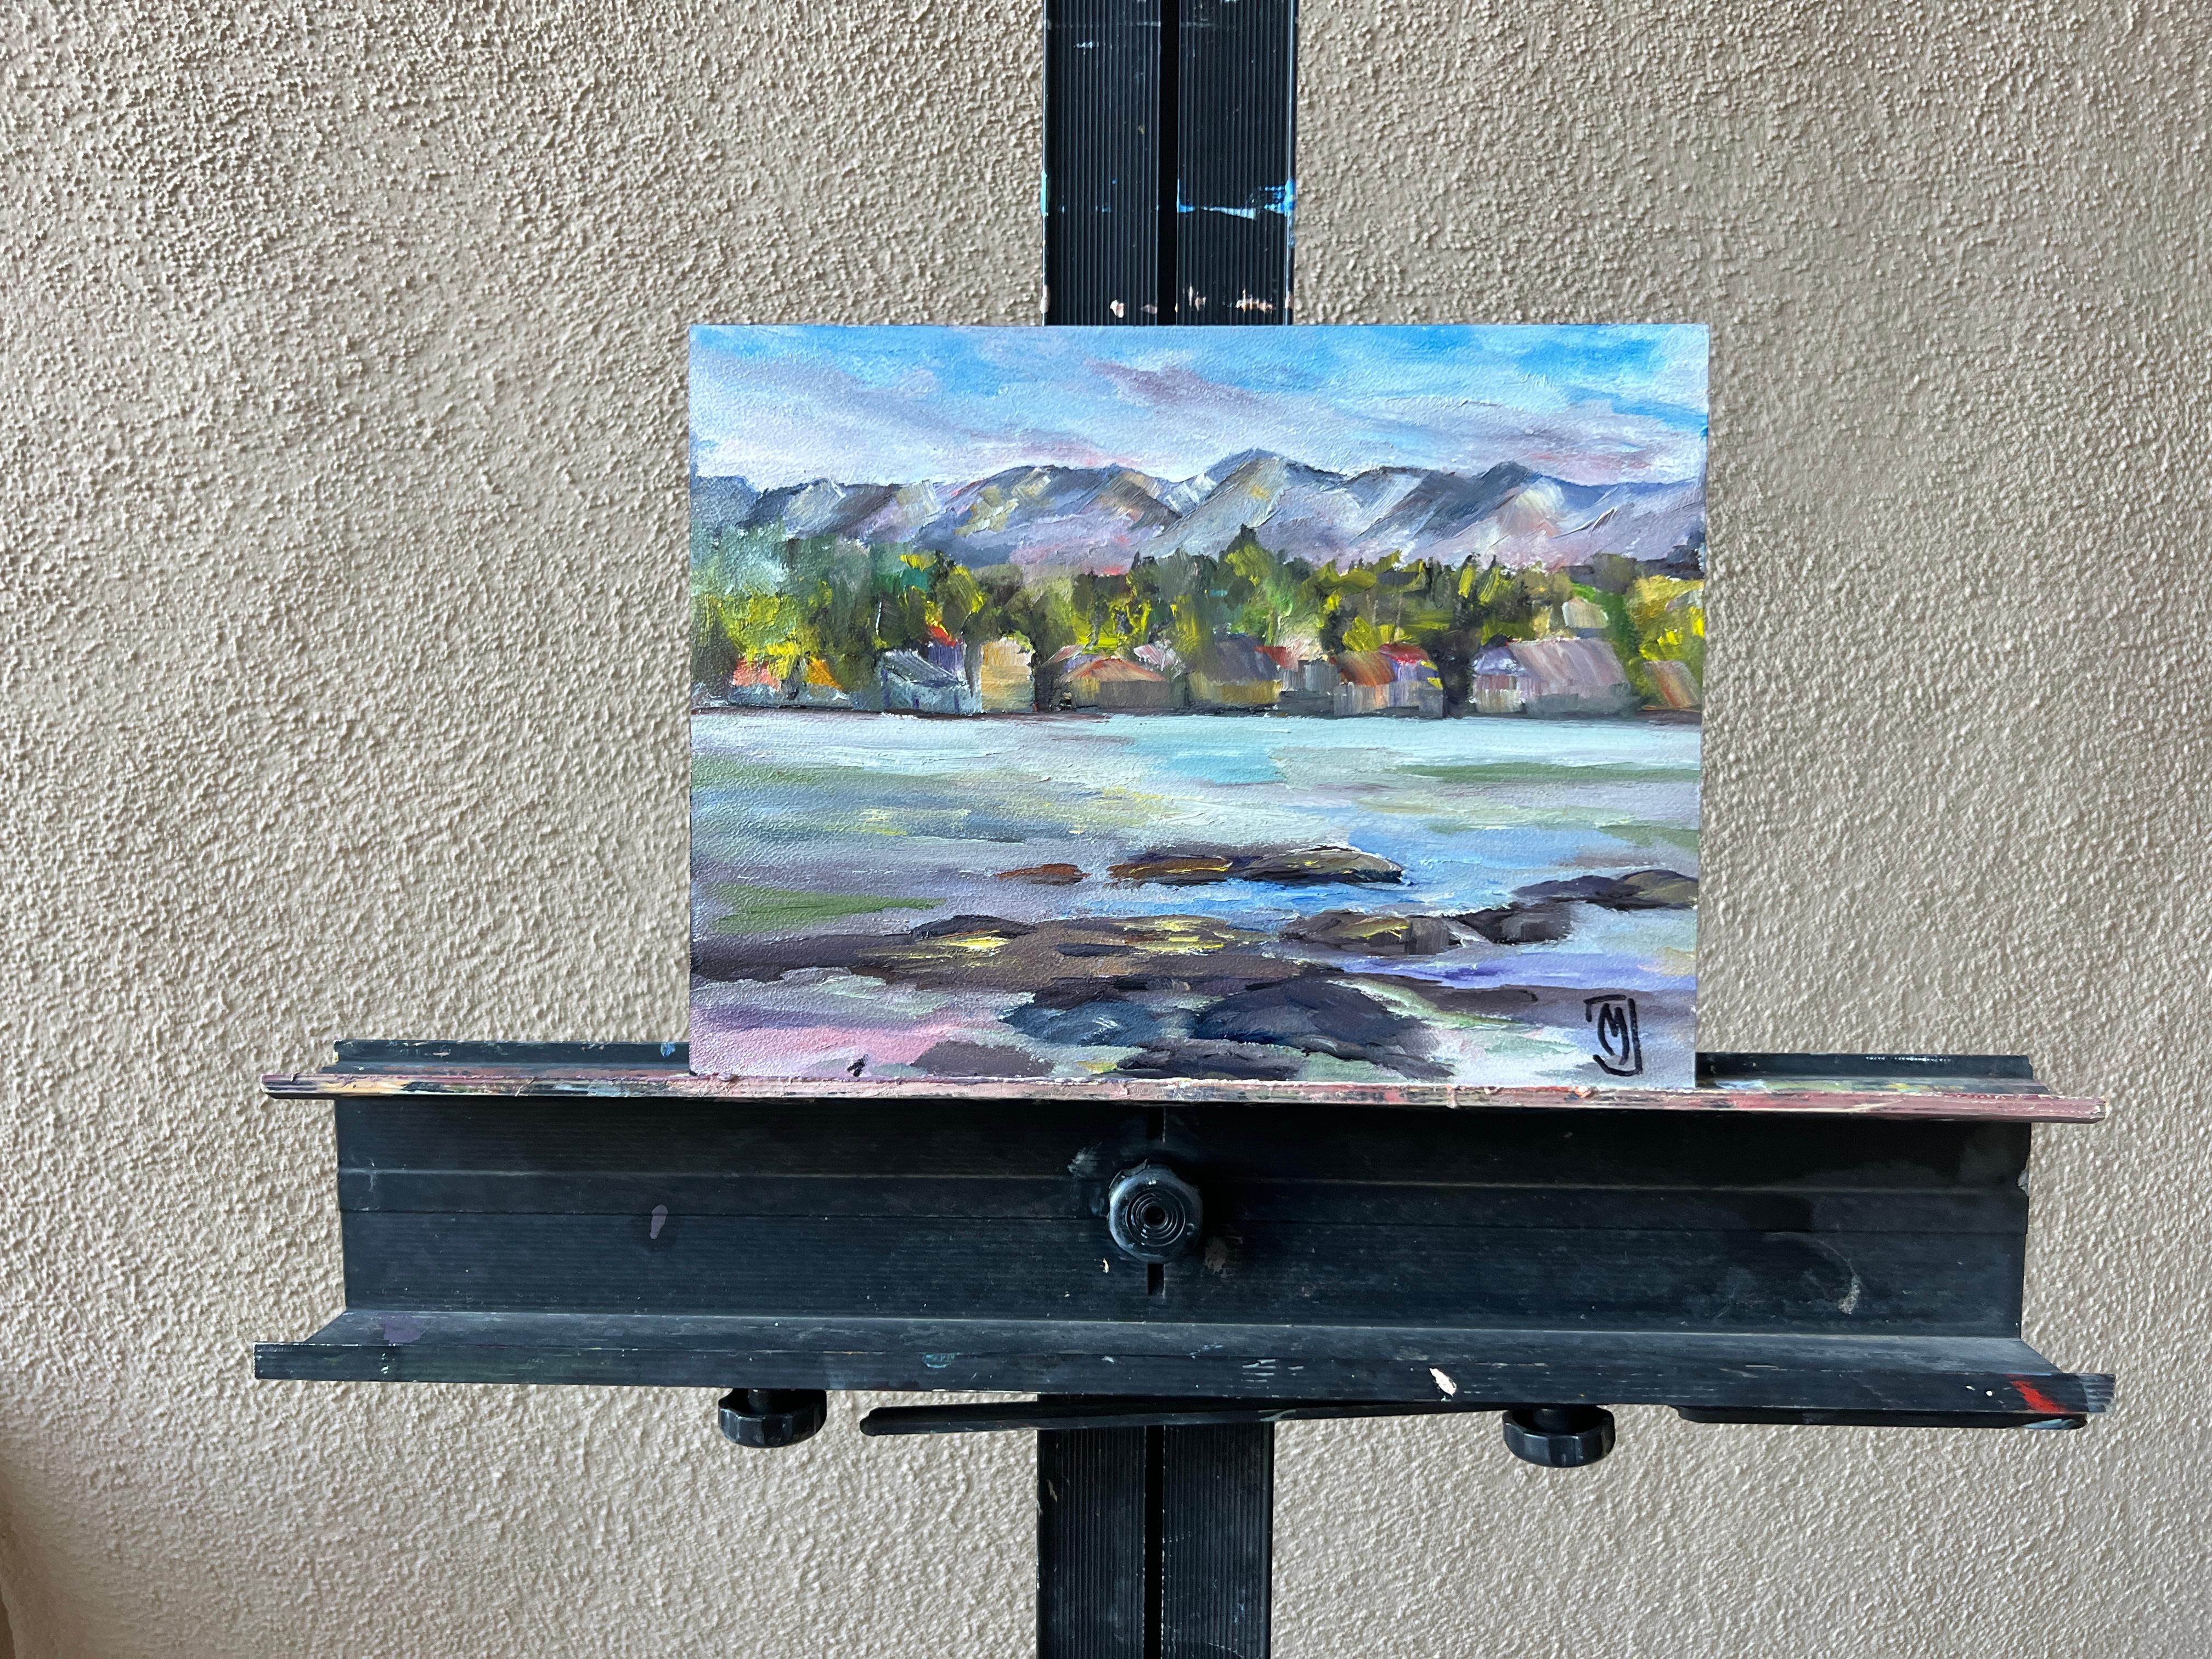 <p>Commentaires de l'artiste<br>Peinte en plein air au Wayfarers Park, l'artiste Marilyn Froggatt représente un endroit situé sur le lac Flathead, dans le Montana. Le magnifique parc près de Big Fork offre une vue panoramique. Peint tôt le matin, le